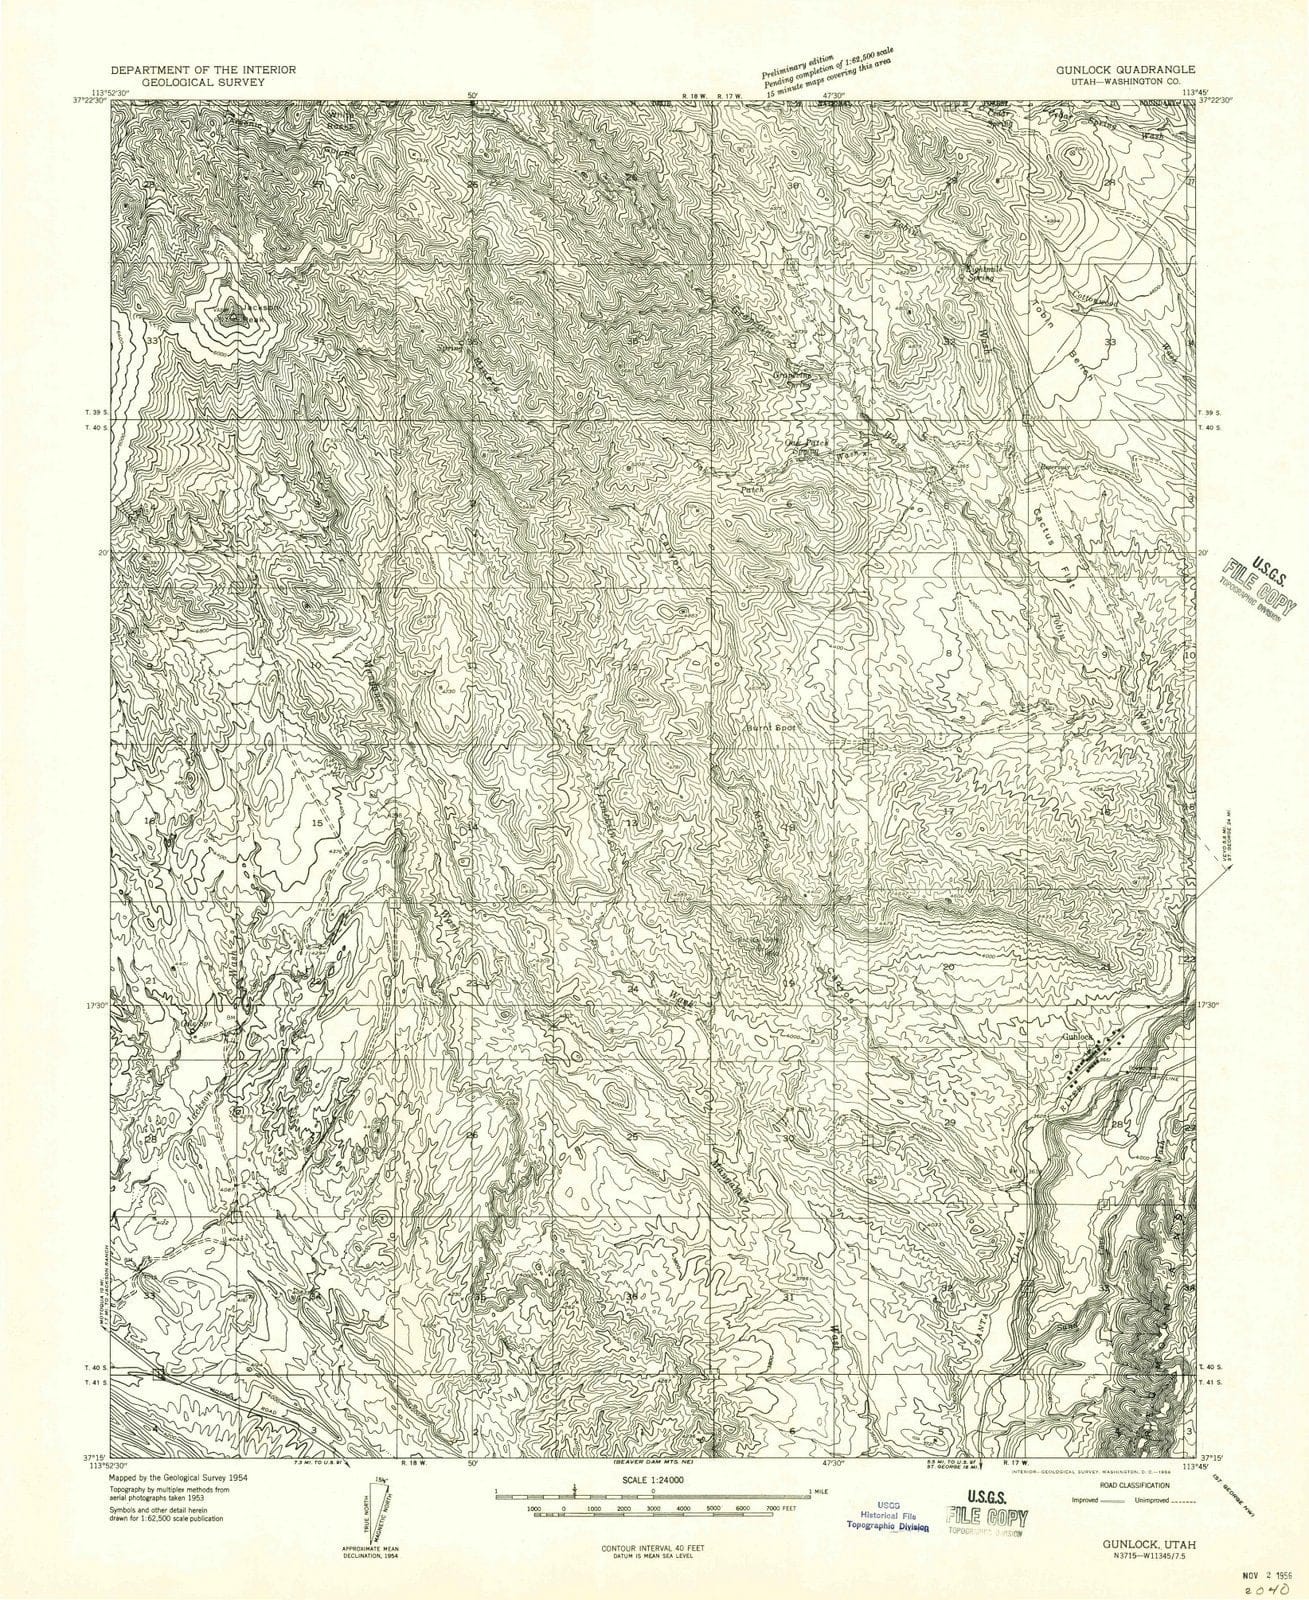 1954 Gunlock, UT - Utah - USGS Topographic Map